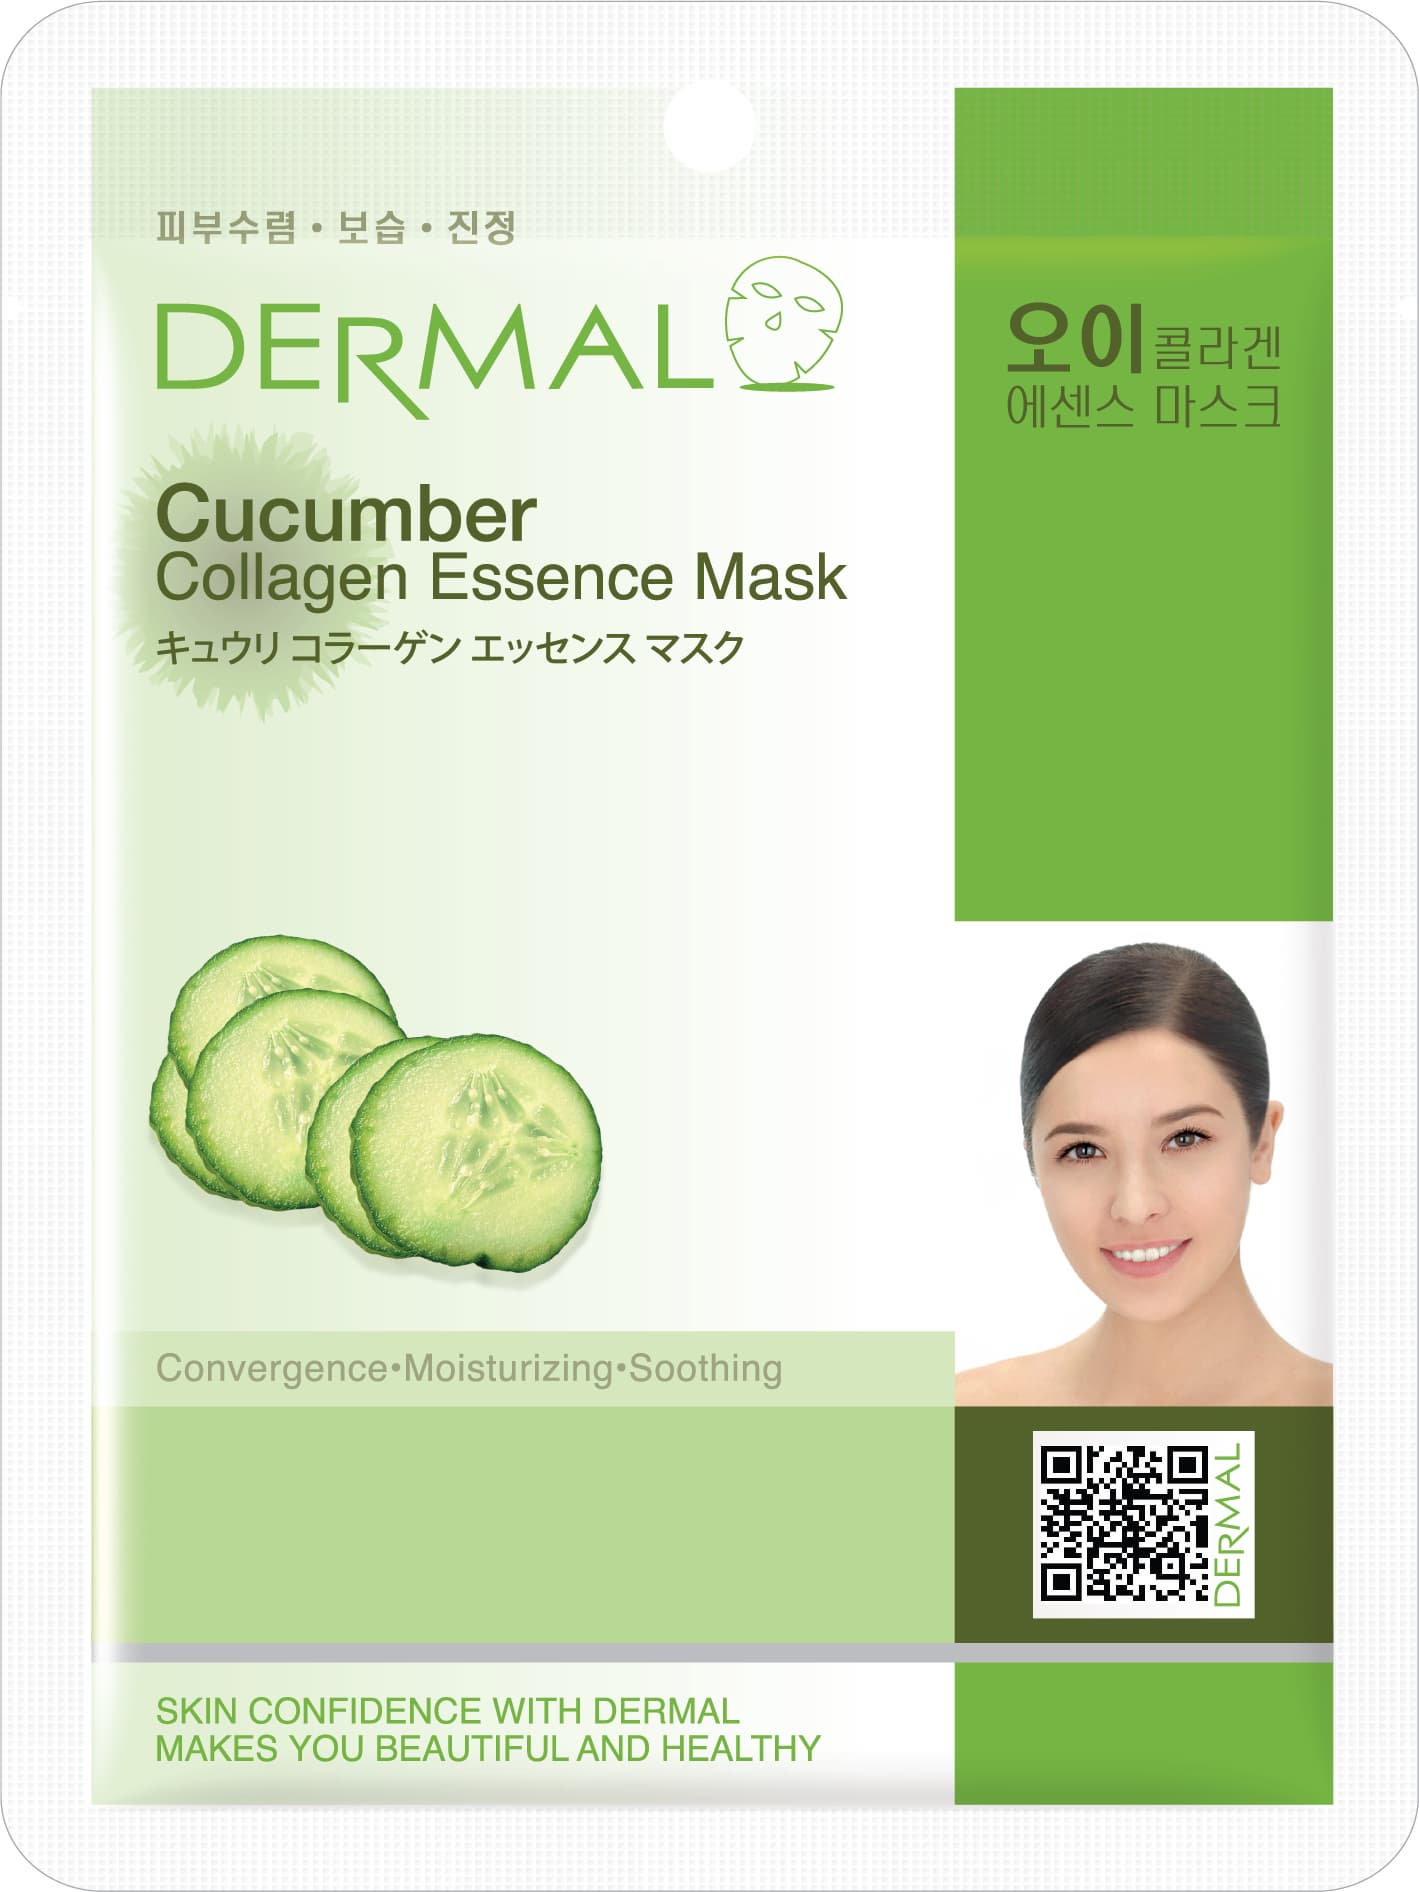 Cucumber Collagen Essence Mask